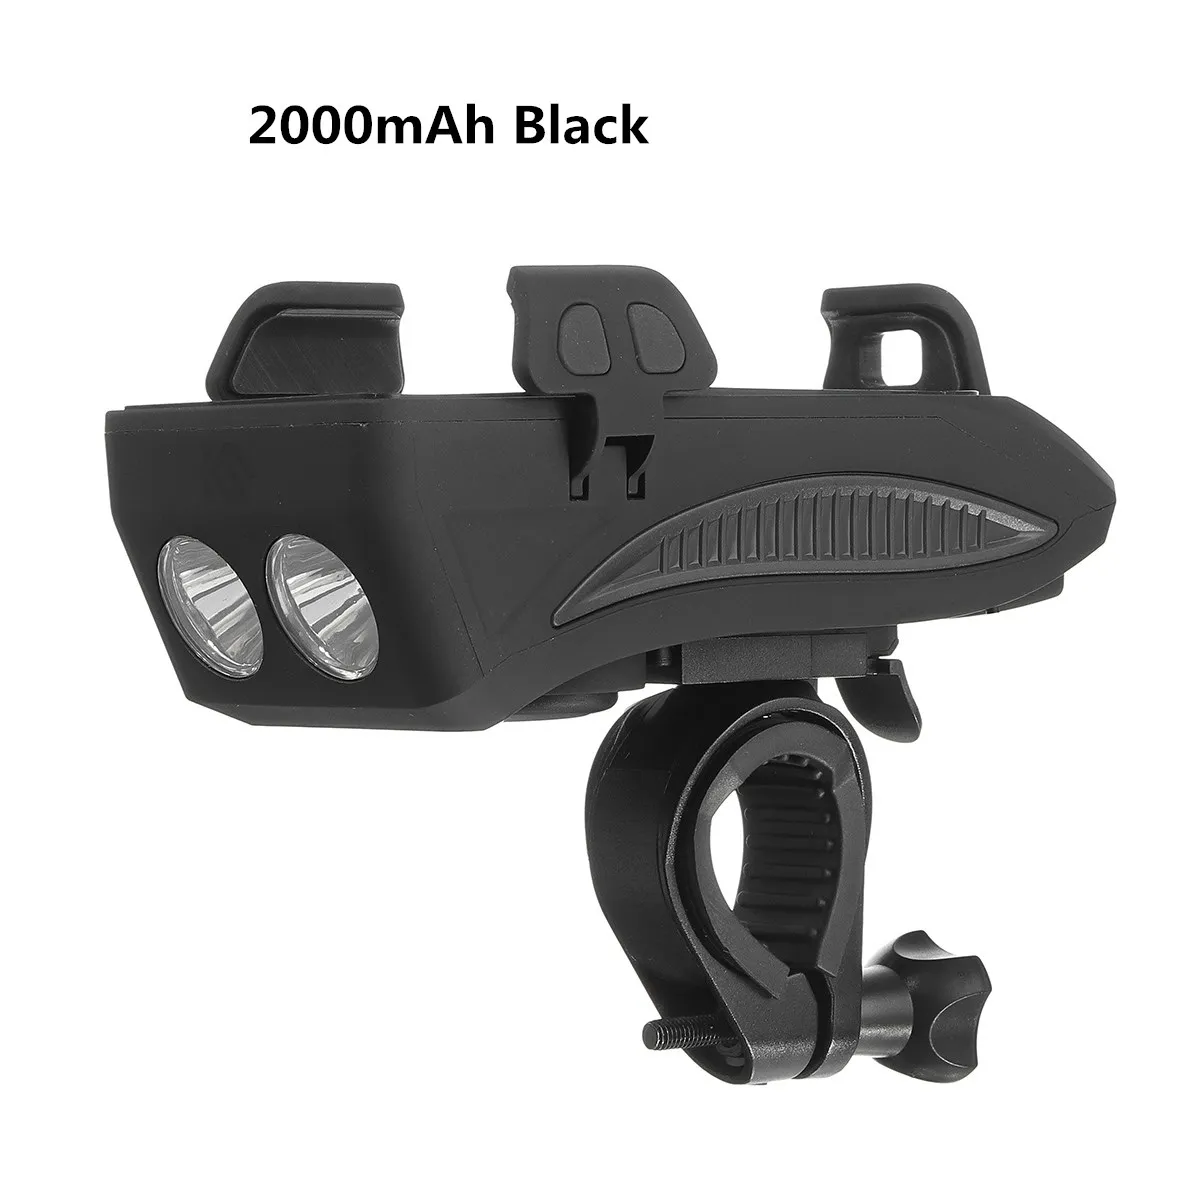 4 в 1 клаксон велосипедный+ свет до 130 дБ USB зарядка MTB дорожный велосипед передний руль электронный звонок лампа водонепроницаемый велосипедные звонки кольцо - Цвет: 2000mAh Black